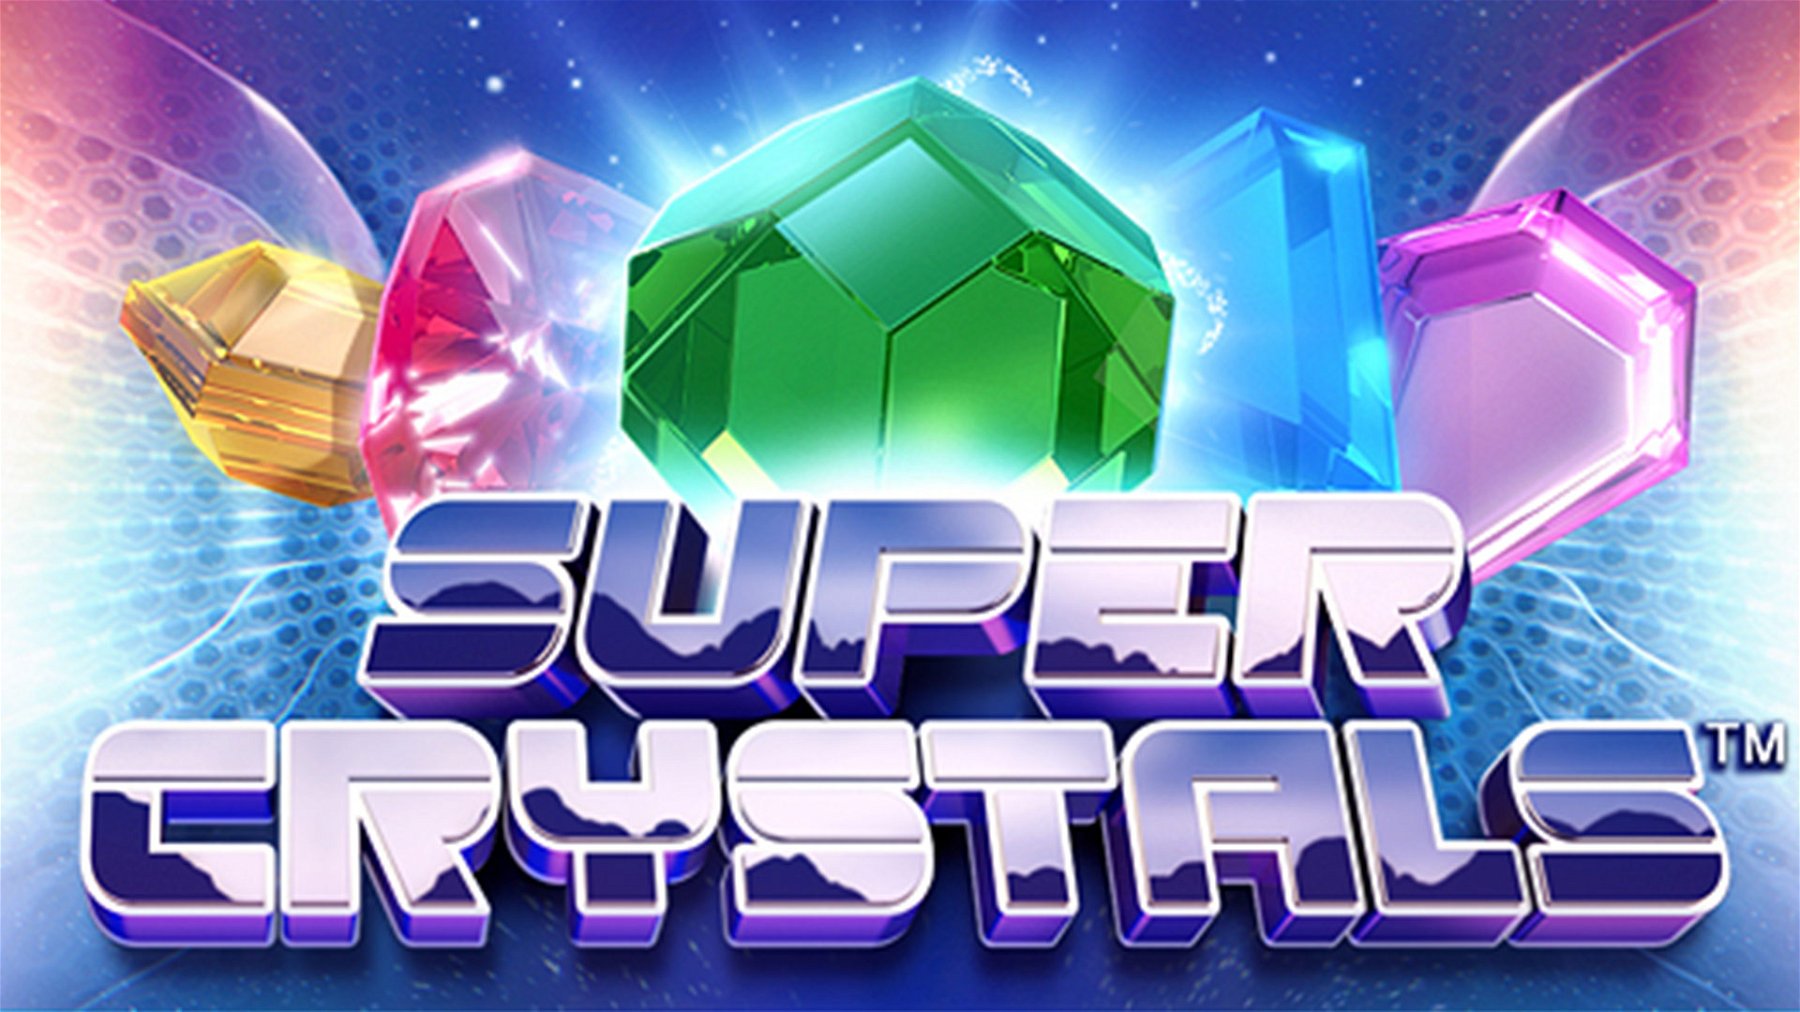 Super crystal